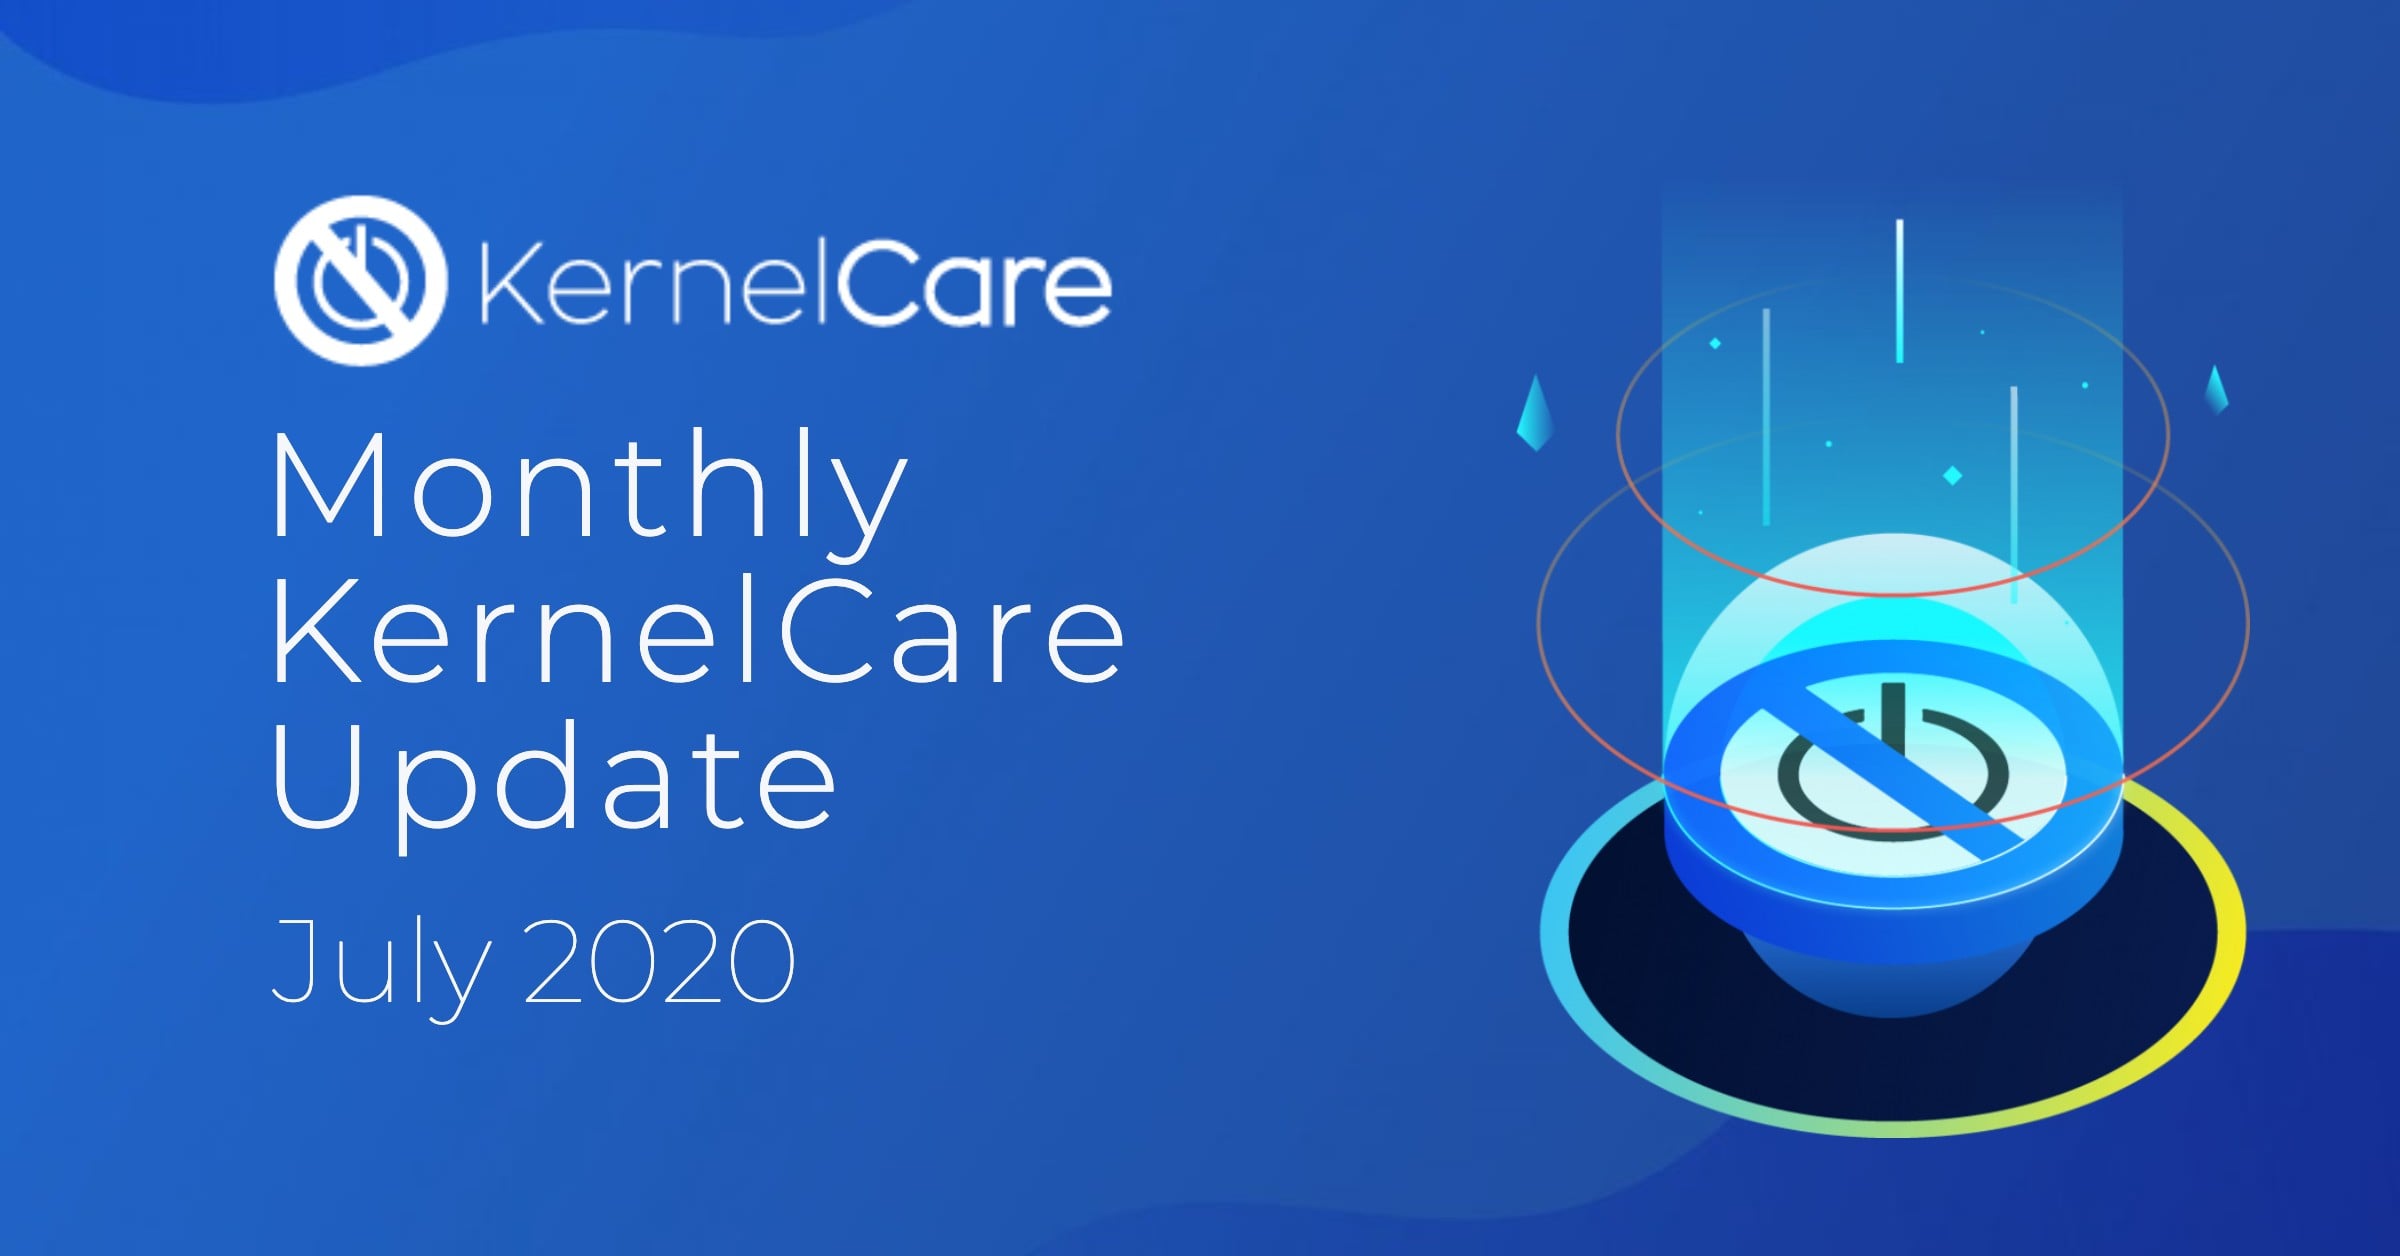 Couverture du blog de mise à jour mensuelle de KernelCare juillet 2020